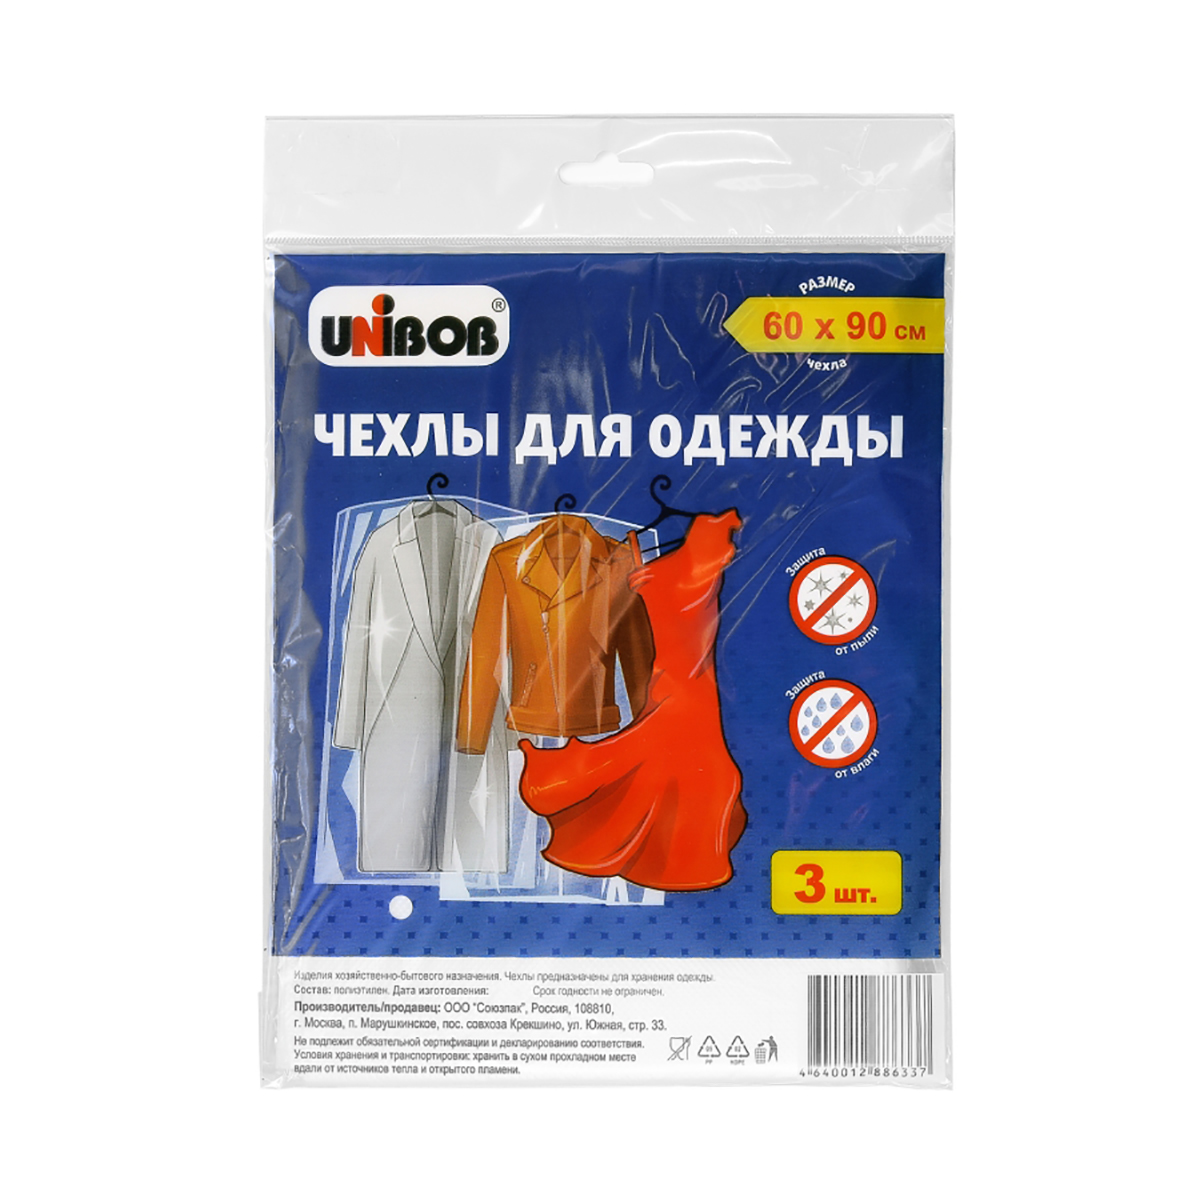 Чехлы для одежды полиэтилен. 60 х 90 см (упак. 3 шт.) (1/200) "unibob"